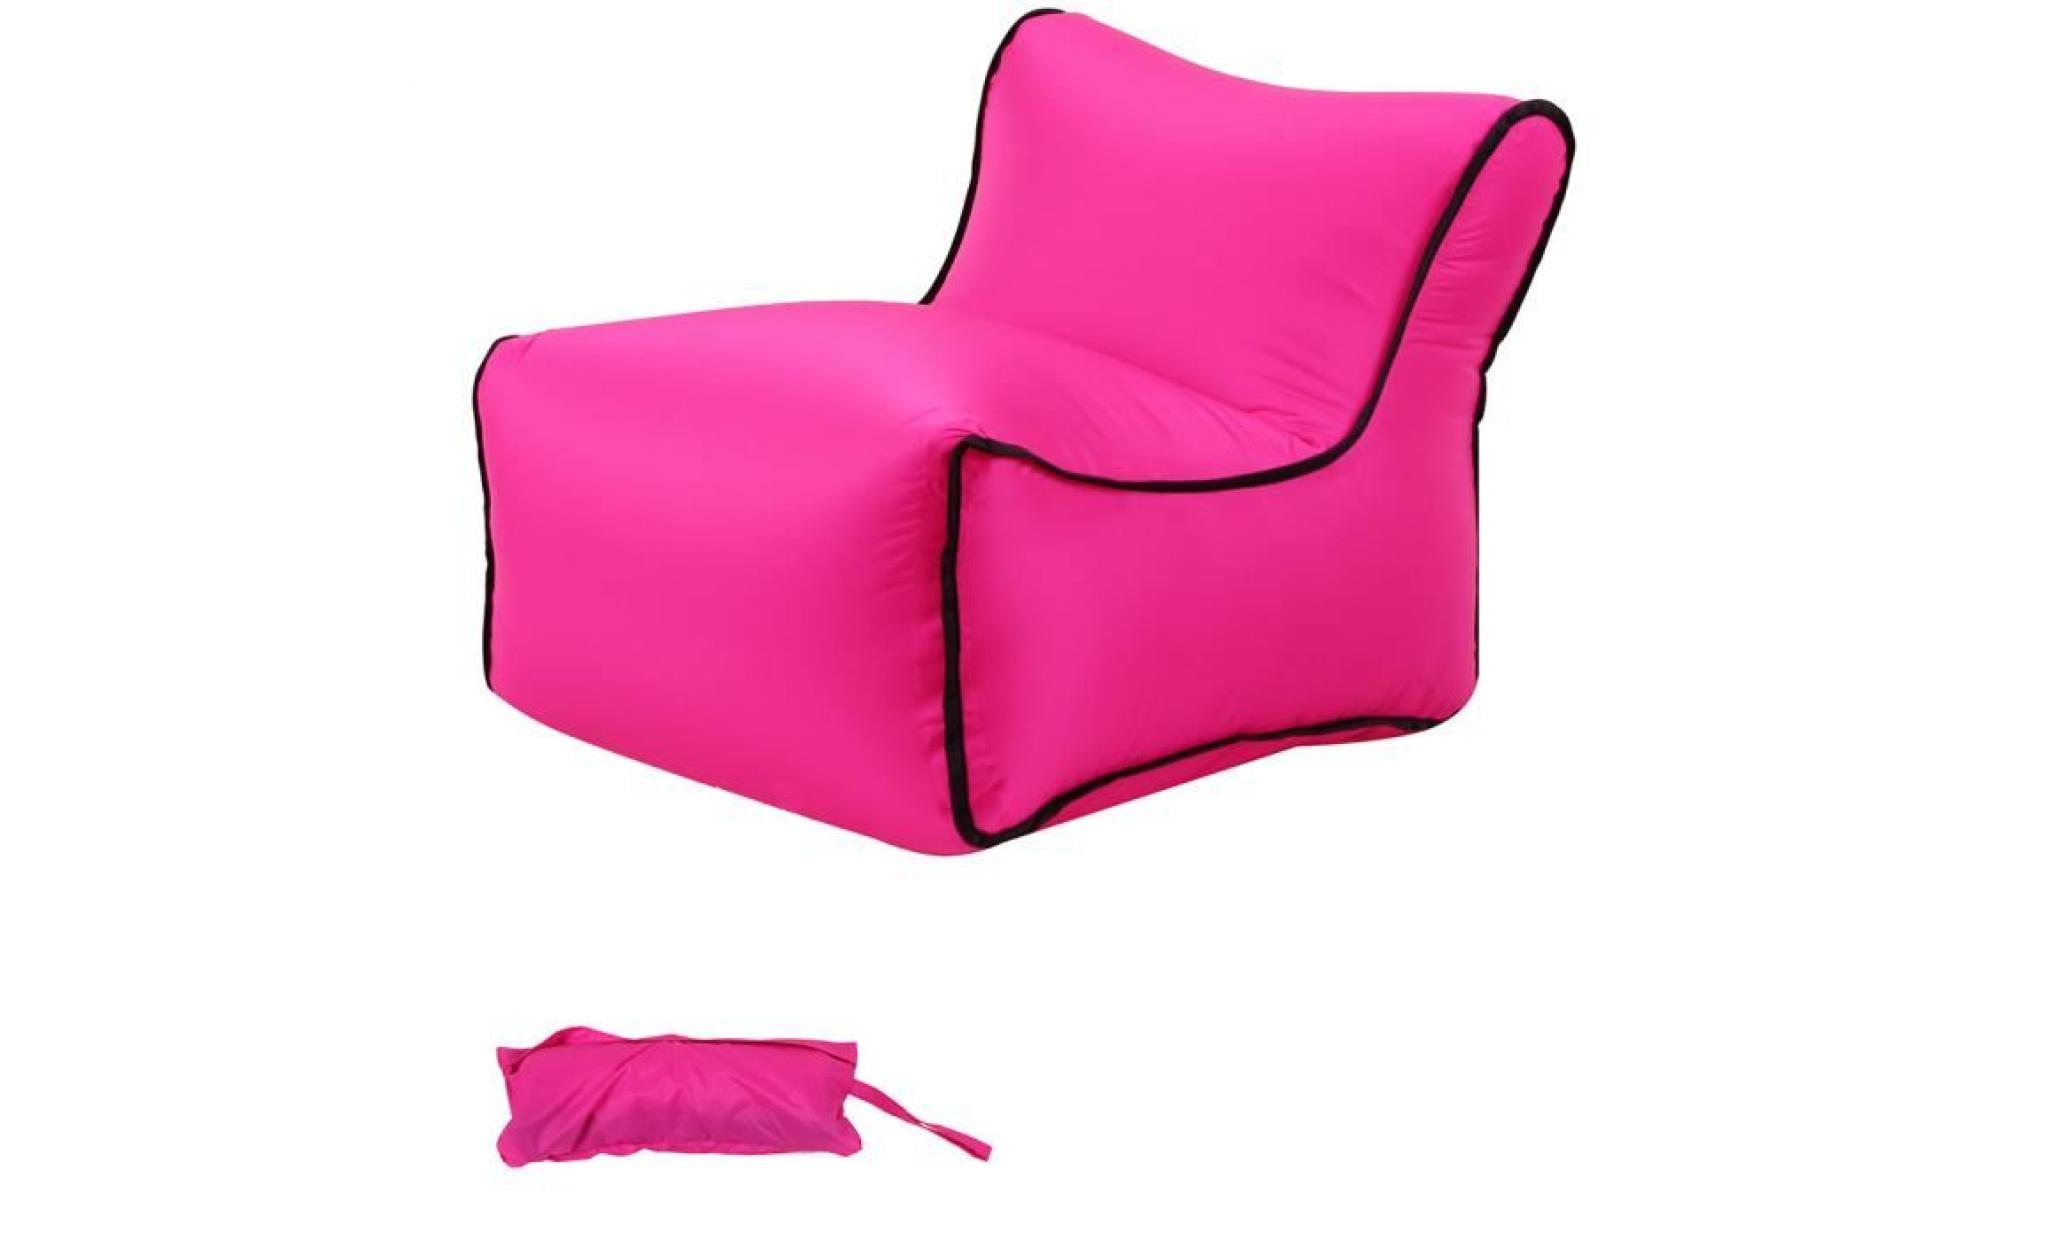 35x50x35cm 1pc chaise de jardin pliante plastique, chaise gonflable, chaise pliante camping, air canapé gonflable pliable bleu clair